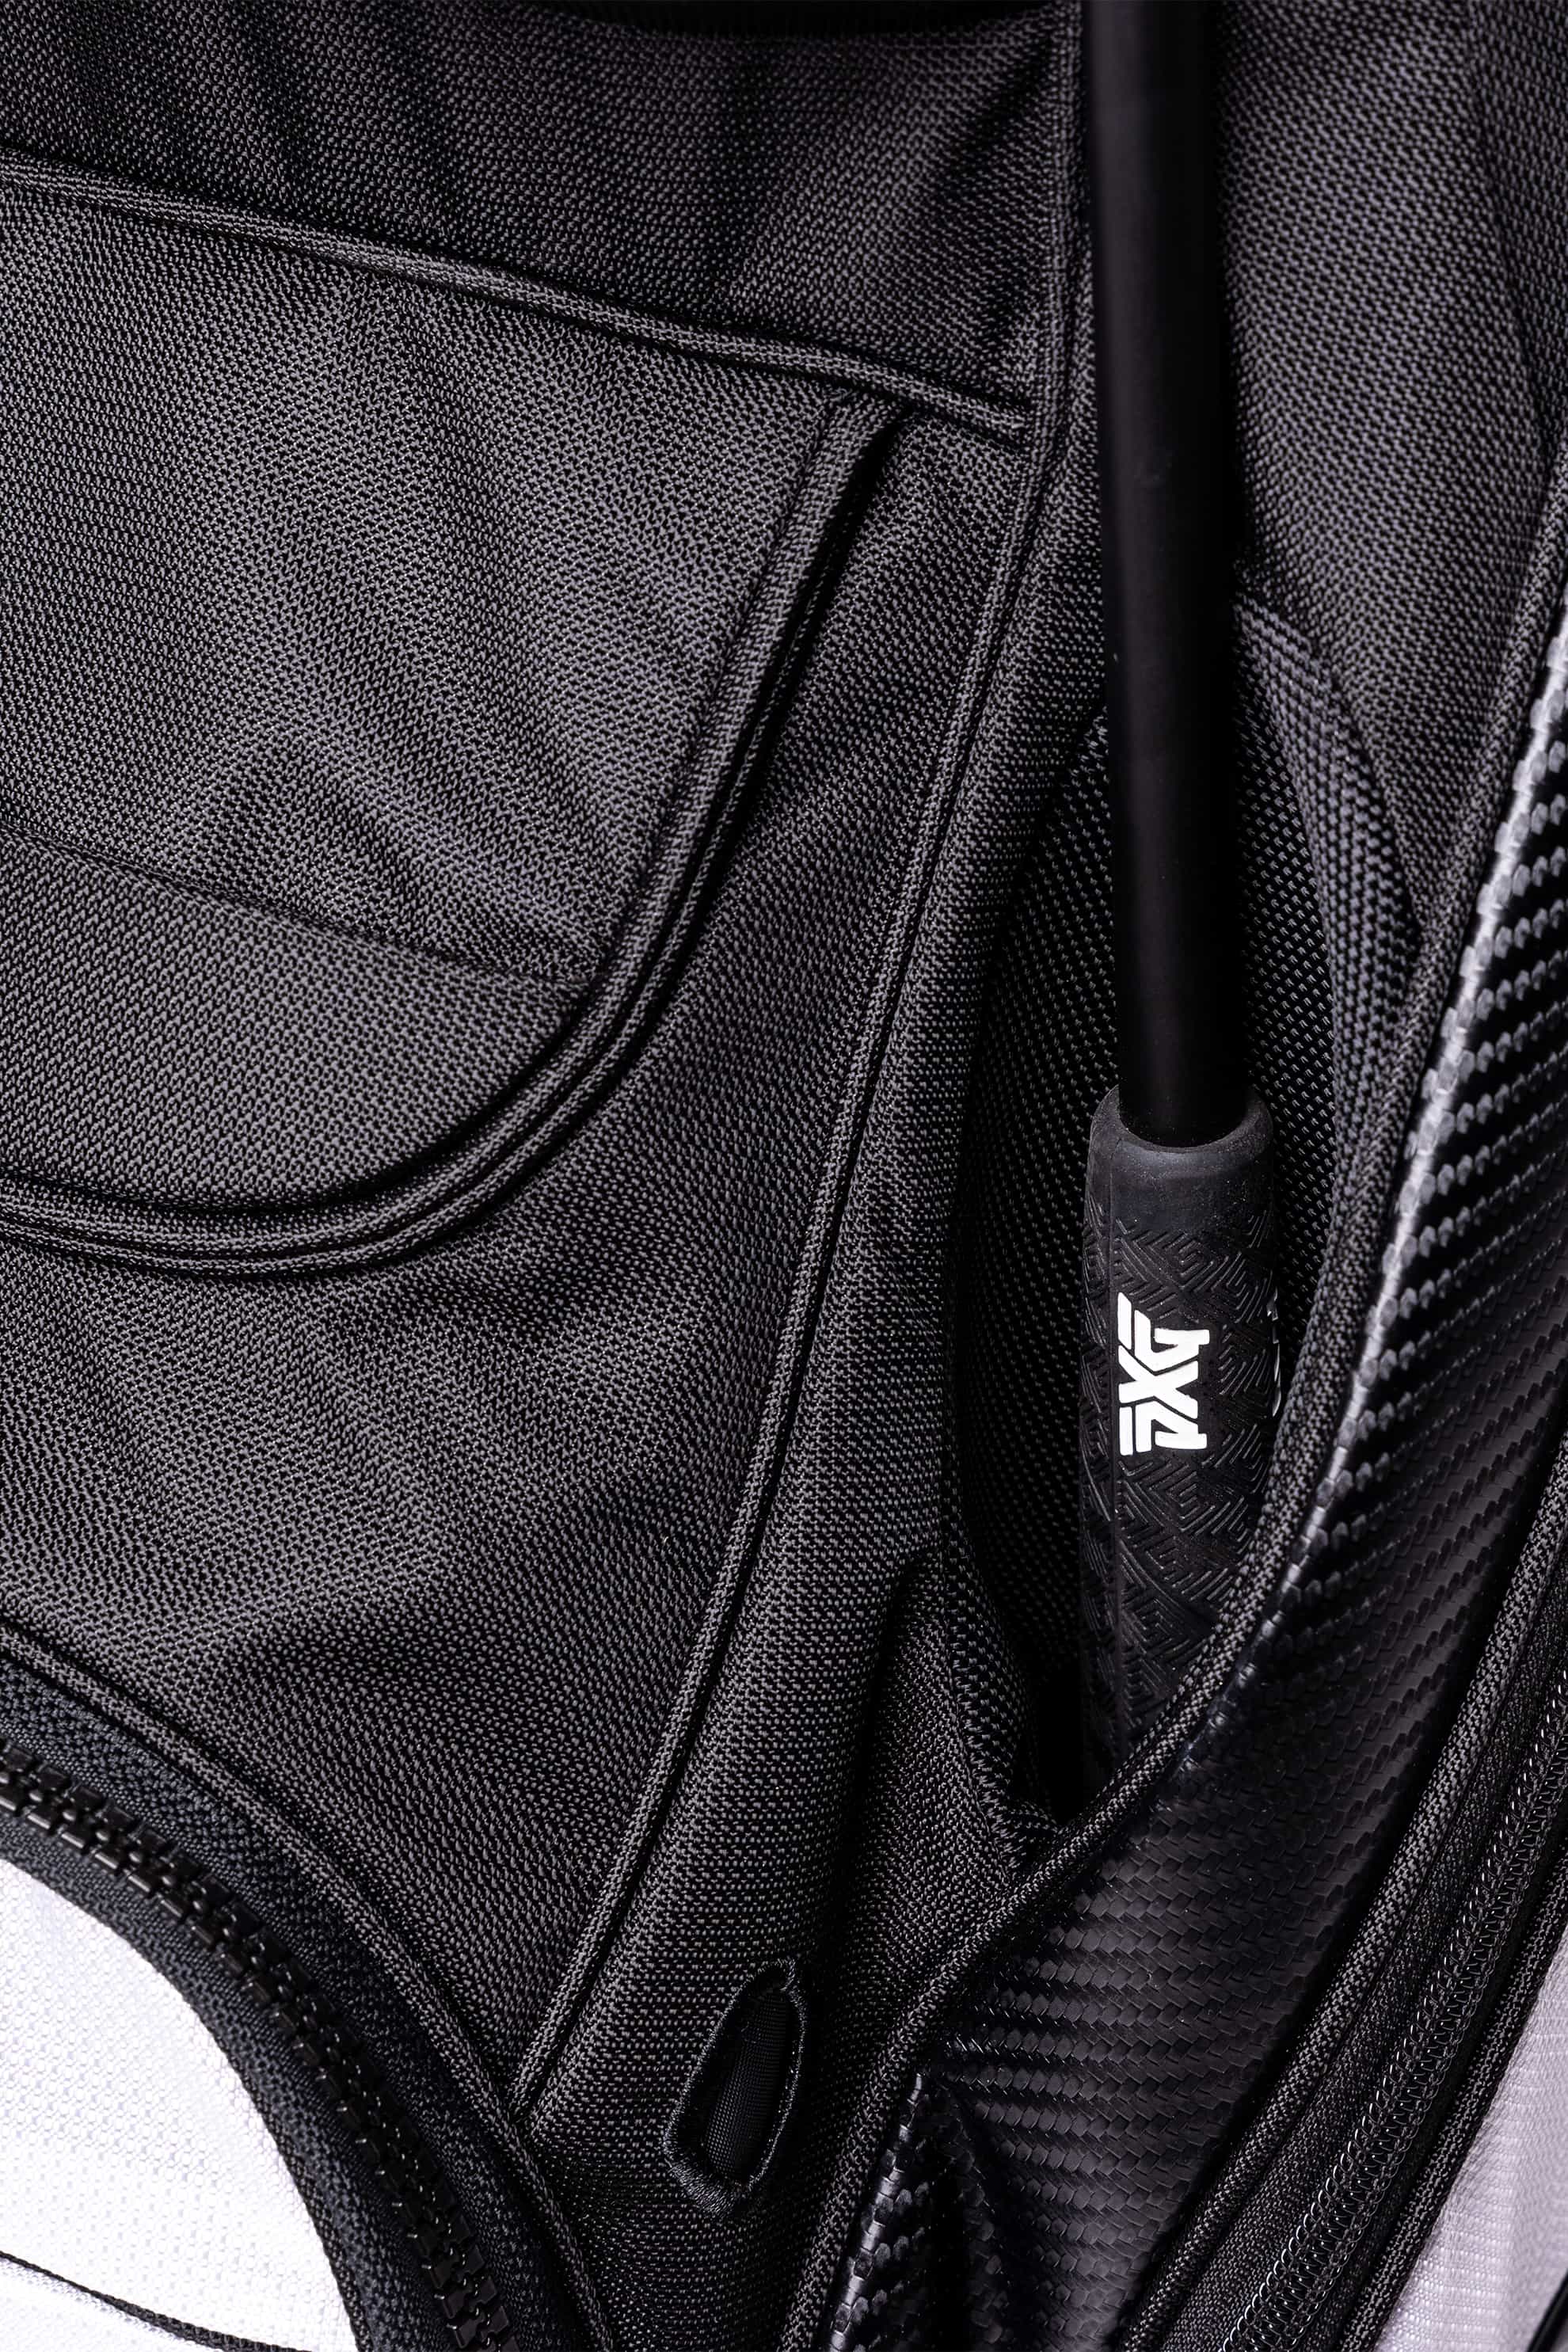 Lightweight Cart Bag | Golf Bags | Standing, Carry & Cart Bags - PXG